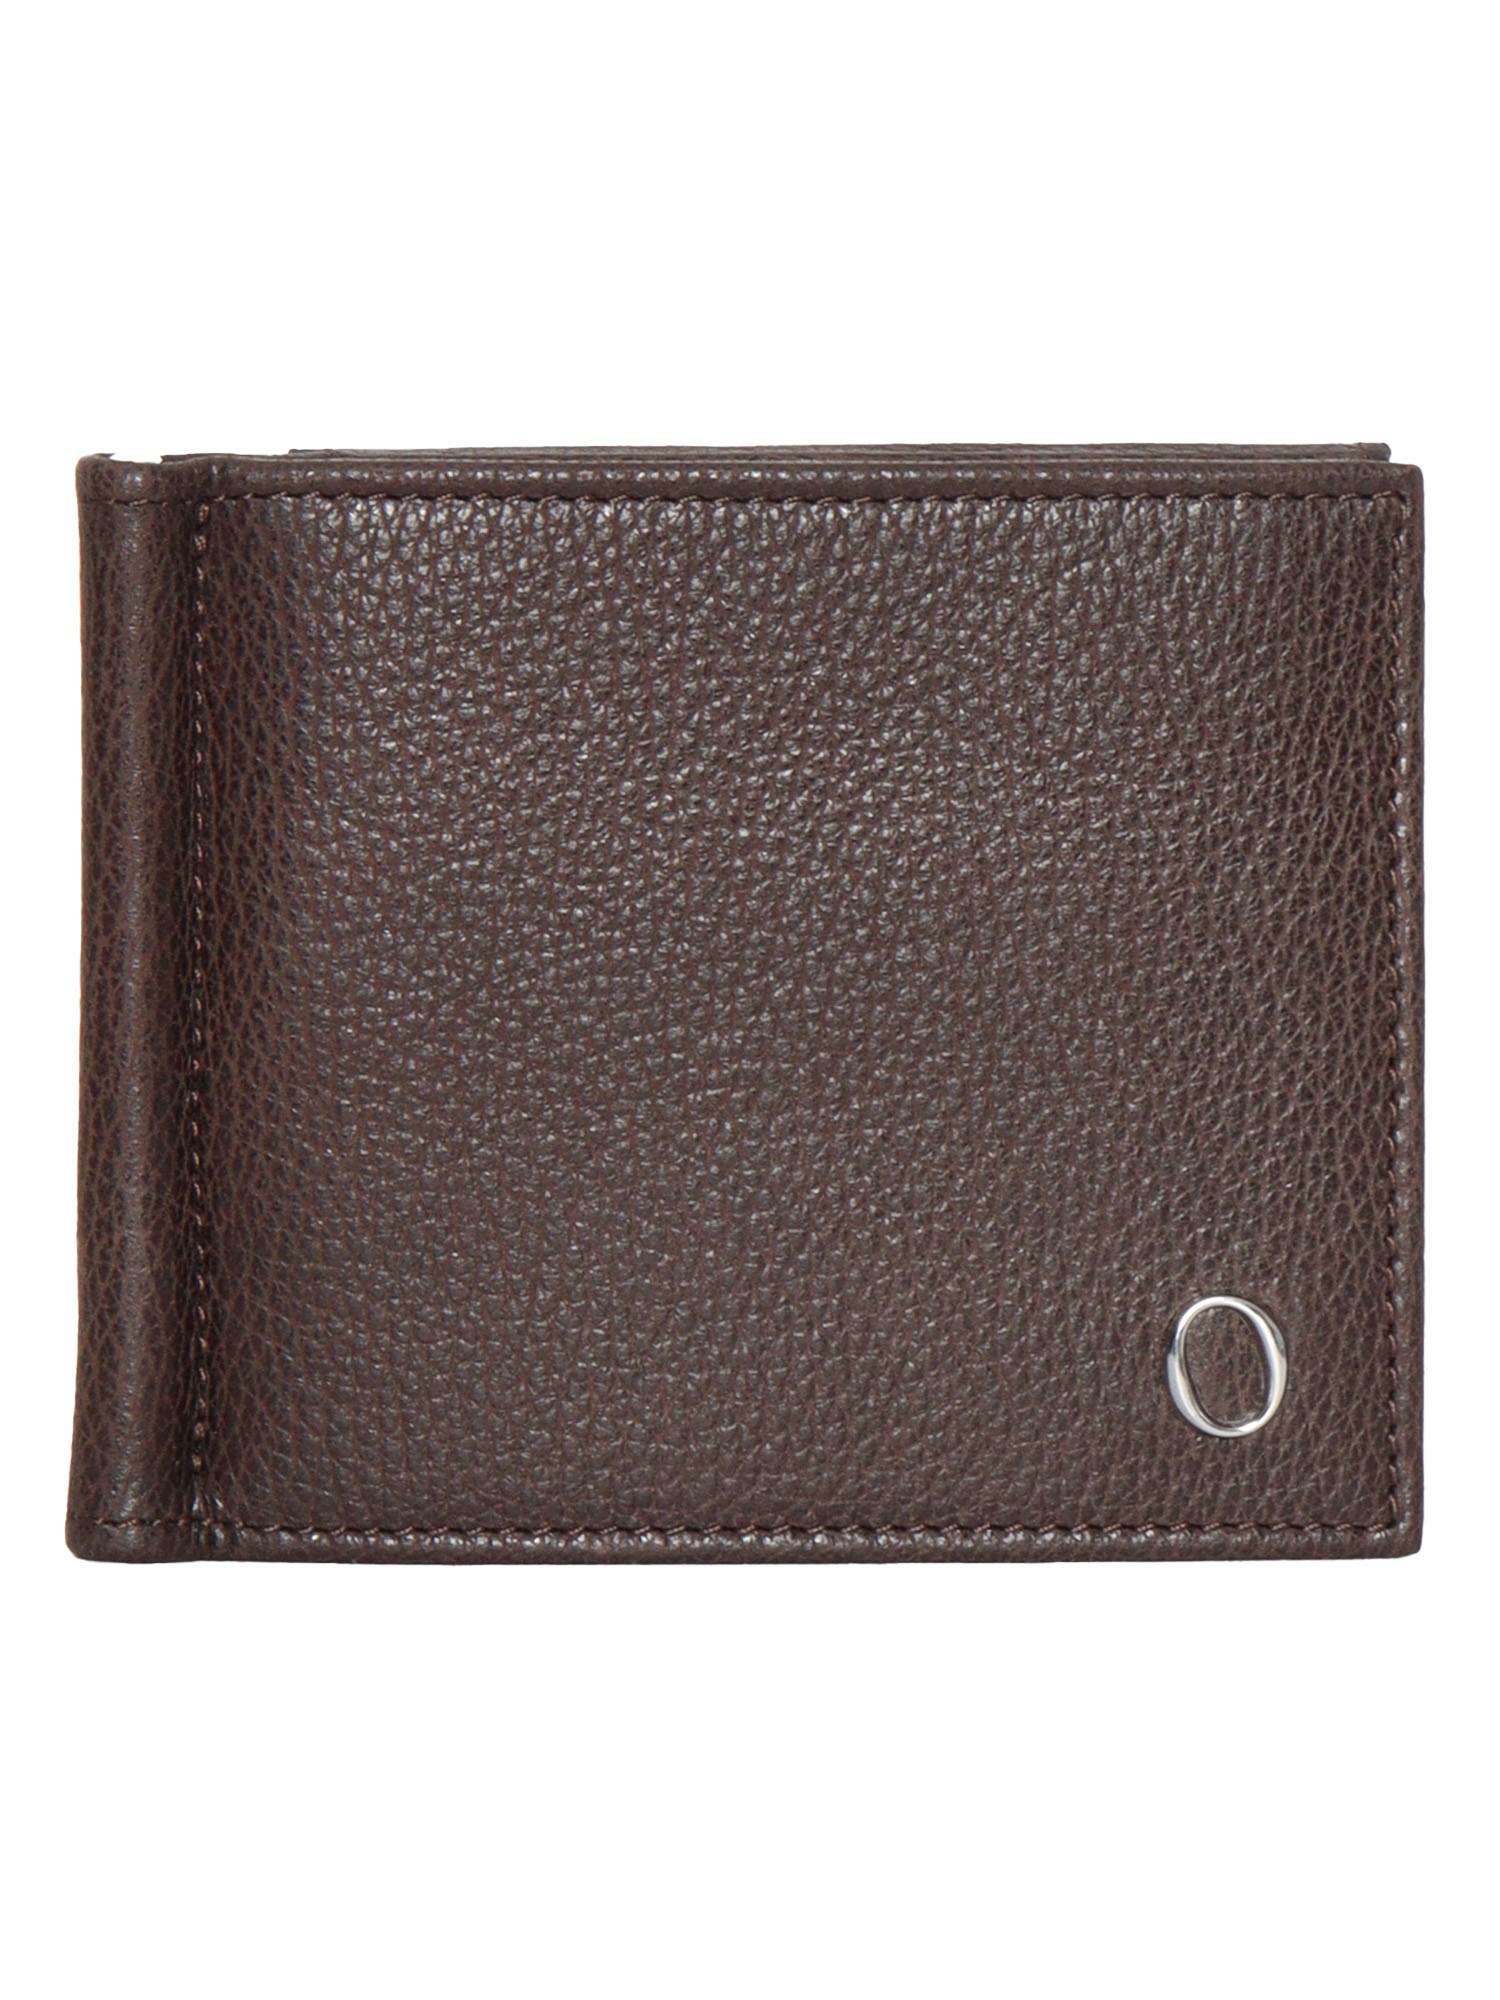 Orciani Micron Wallet In Marrone